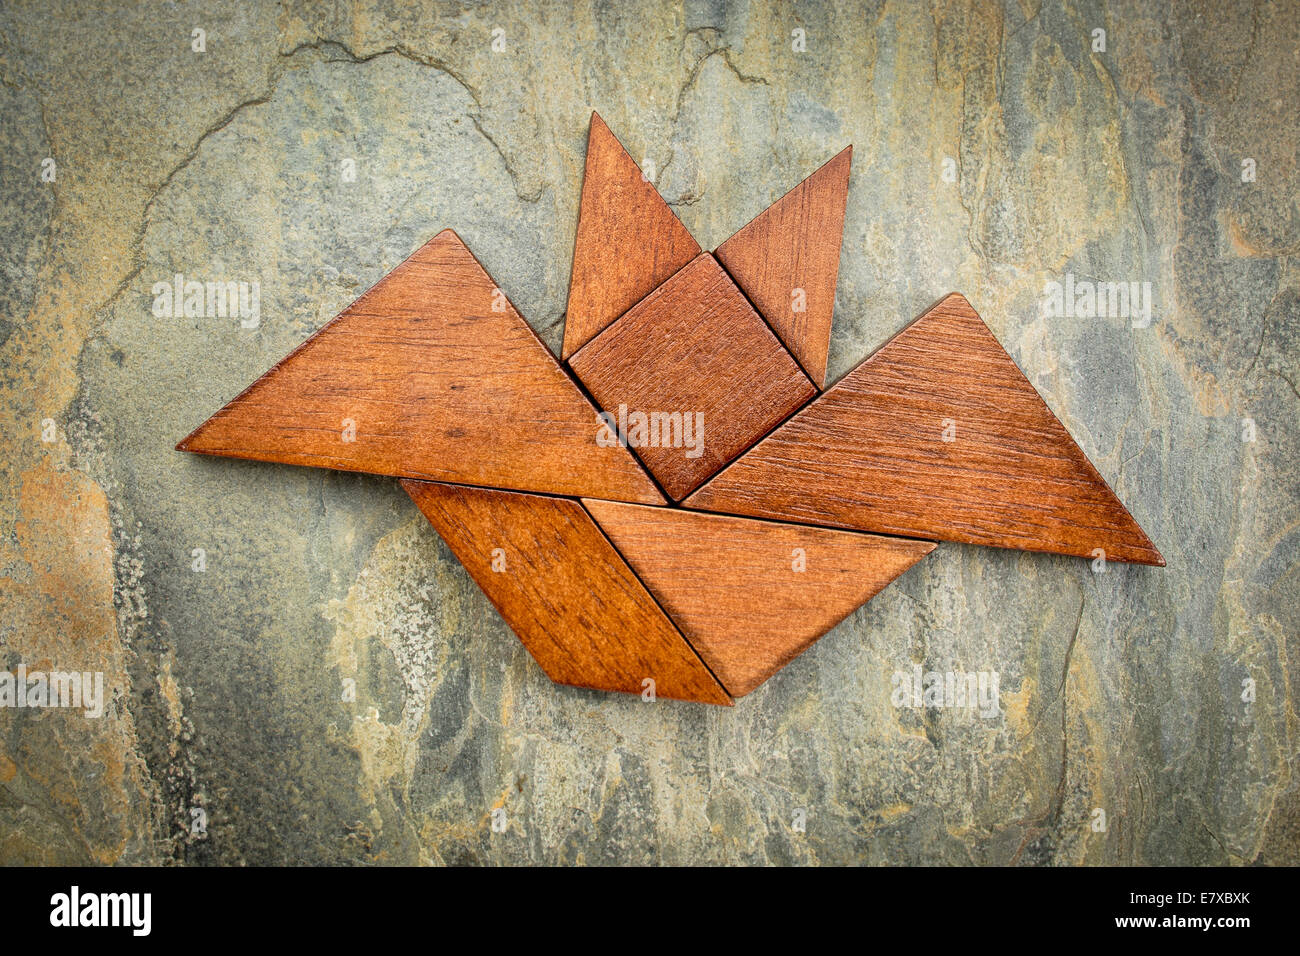 abstraktes Bild von eine fliegende Fledermaus aus sieben Tangram Holzteile über einen Schiefer Felsen Hintergrund, Halloween Konzept gebaut Stockfoto